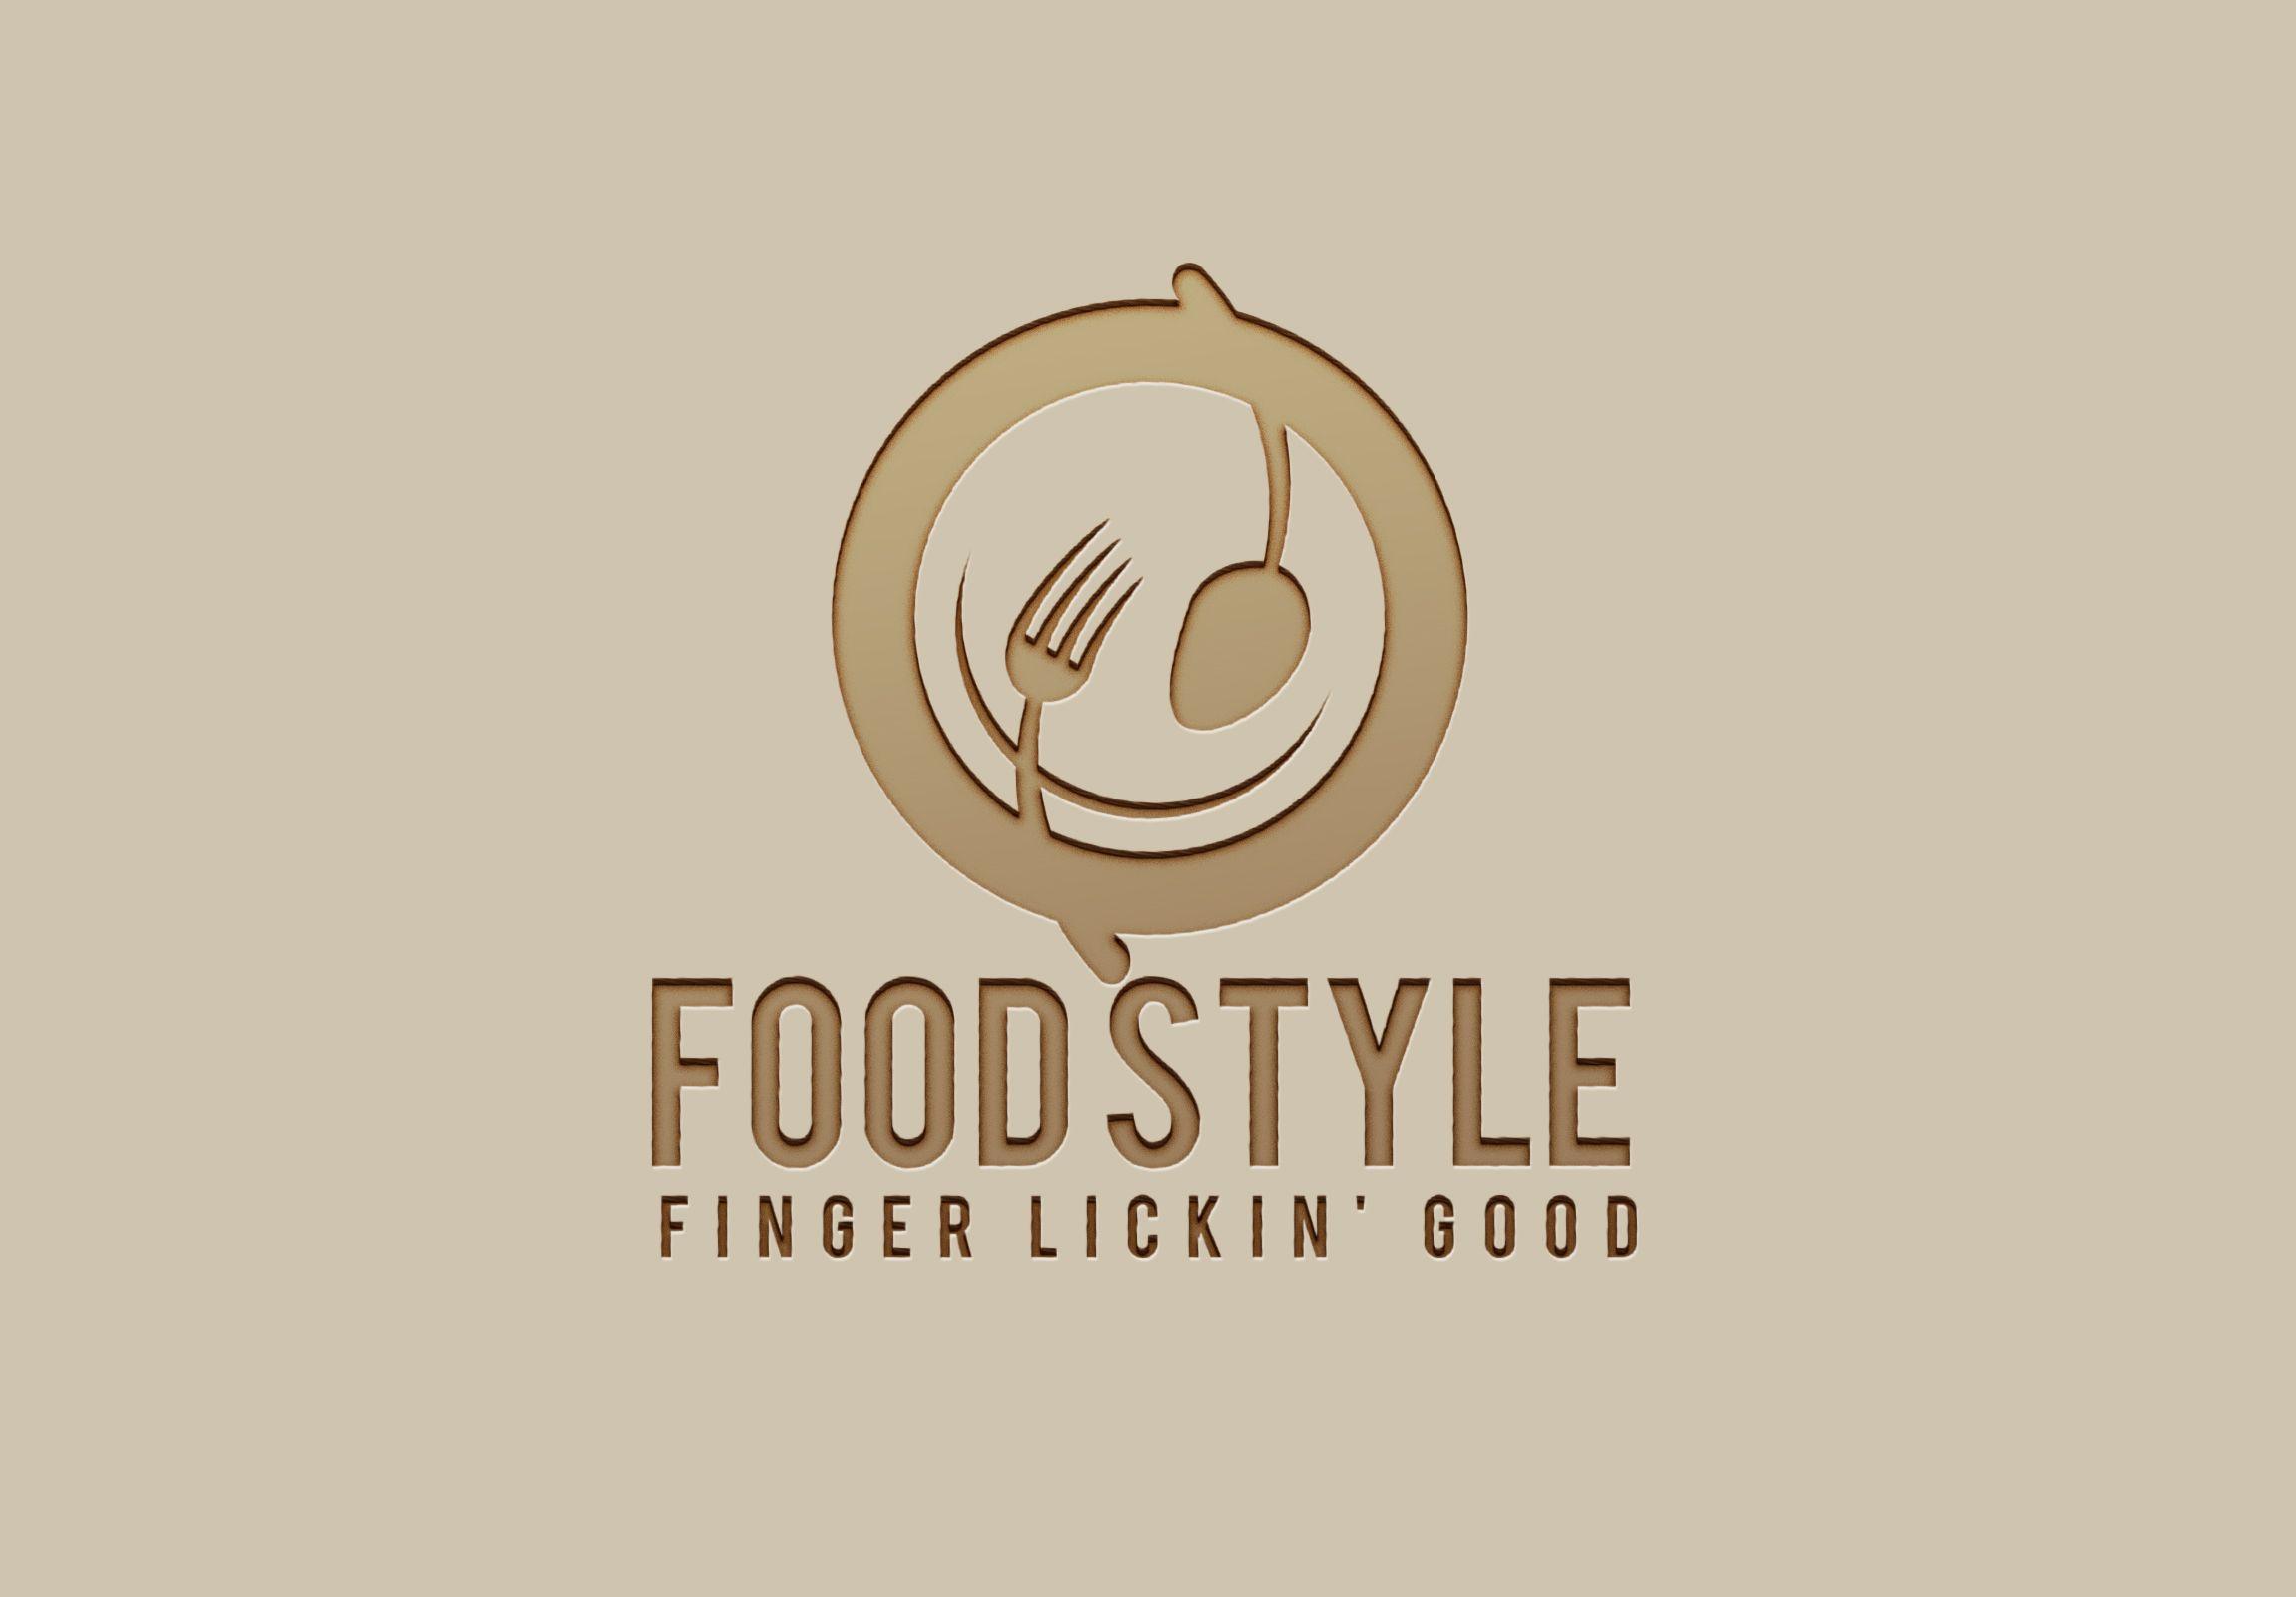 Food Business Logo - Design Seafood, Fast Food, Restaurant, Food Blog business Logo for ...